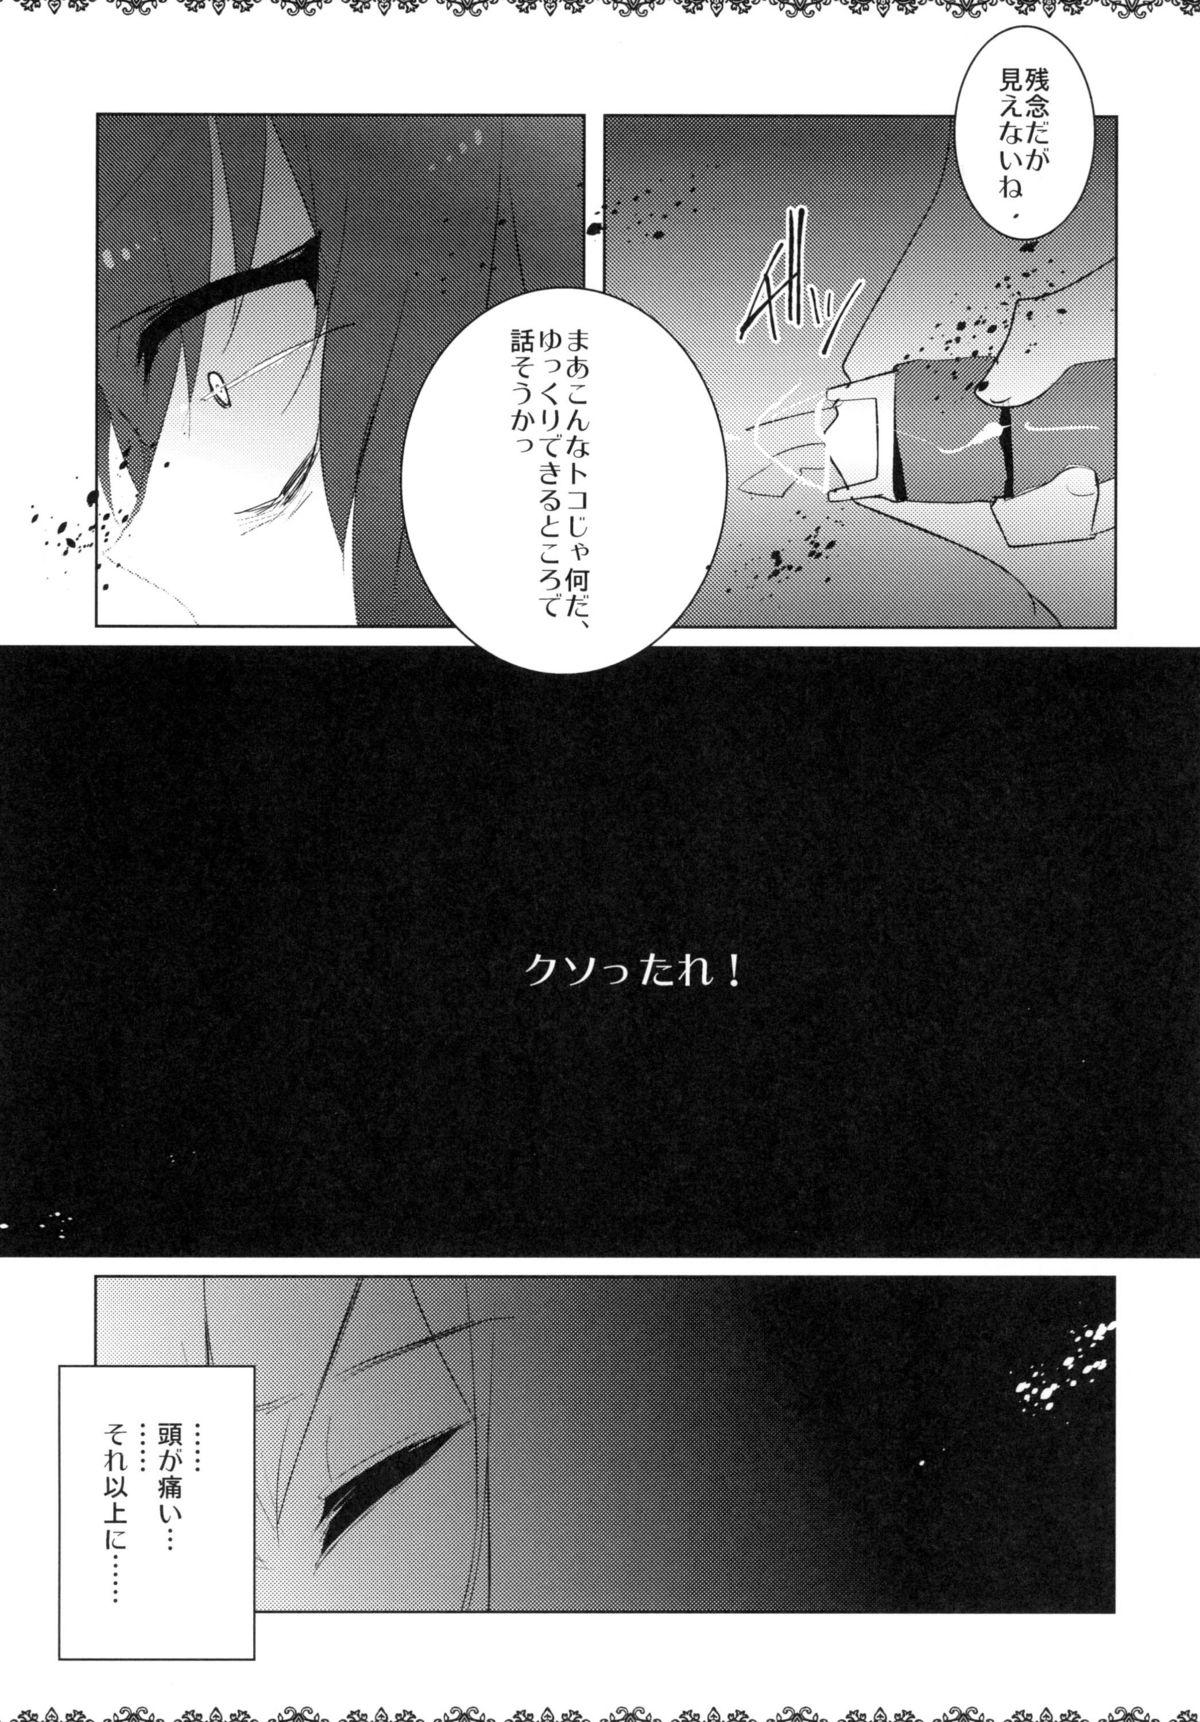 Spandex Rinraku Intou no Kurisu - Steinsgate Jockstrap - Page 7